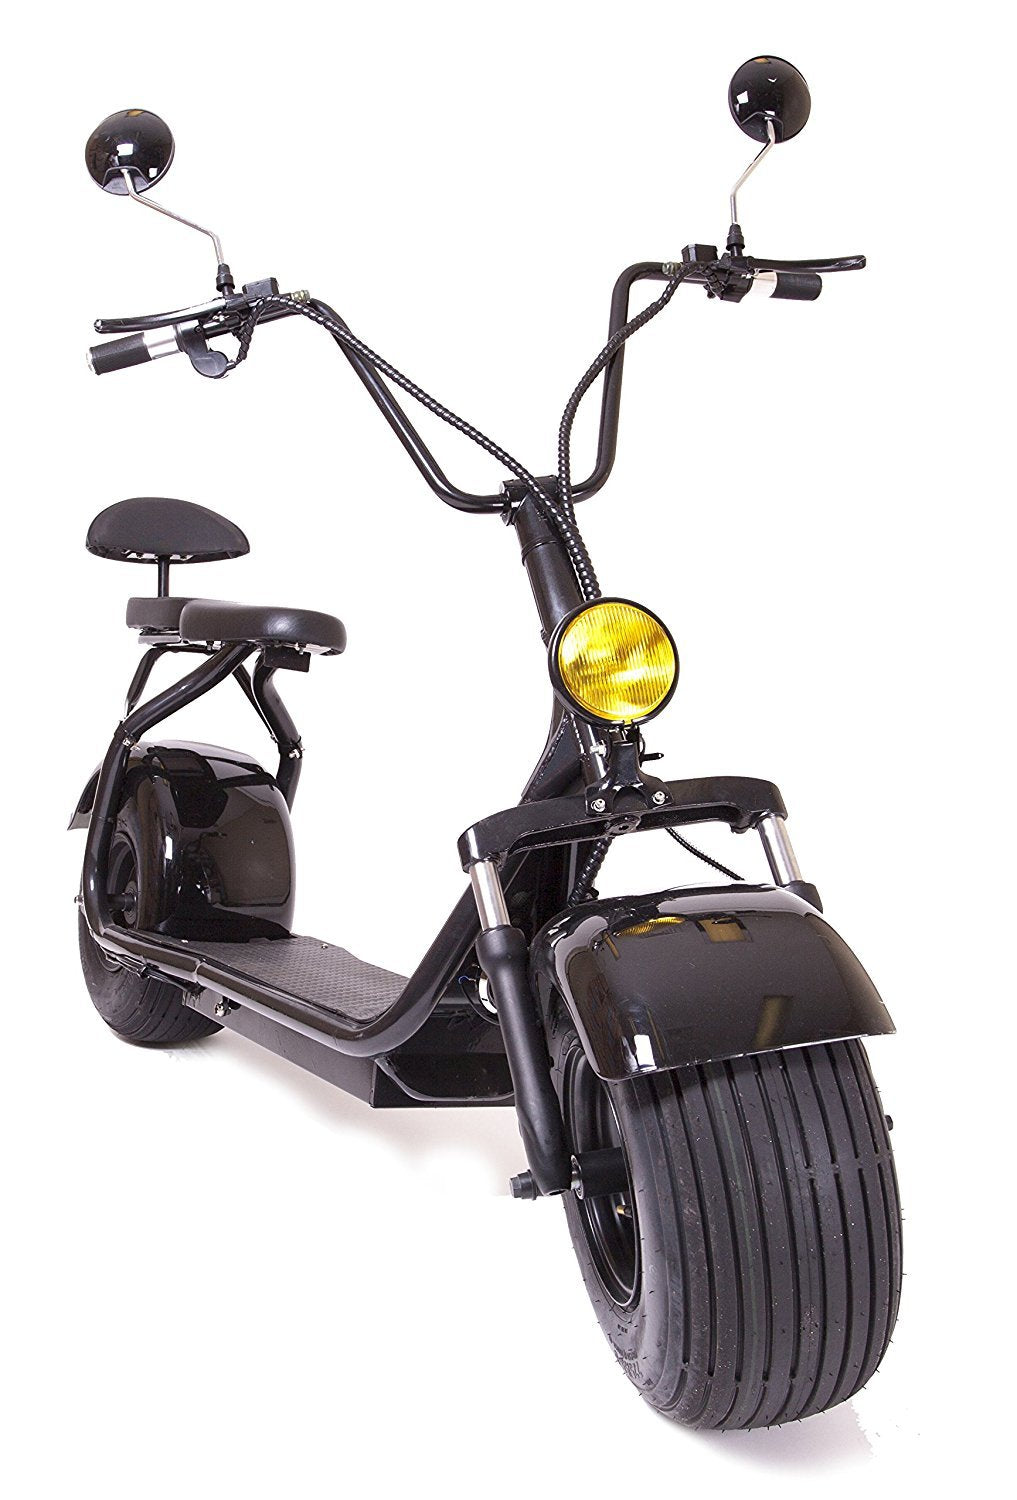 MECA RUN C99 ESSENCE – R1 quads motos scooters